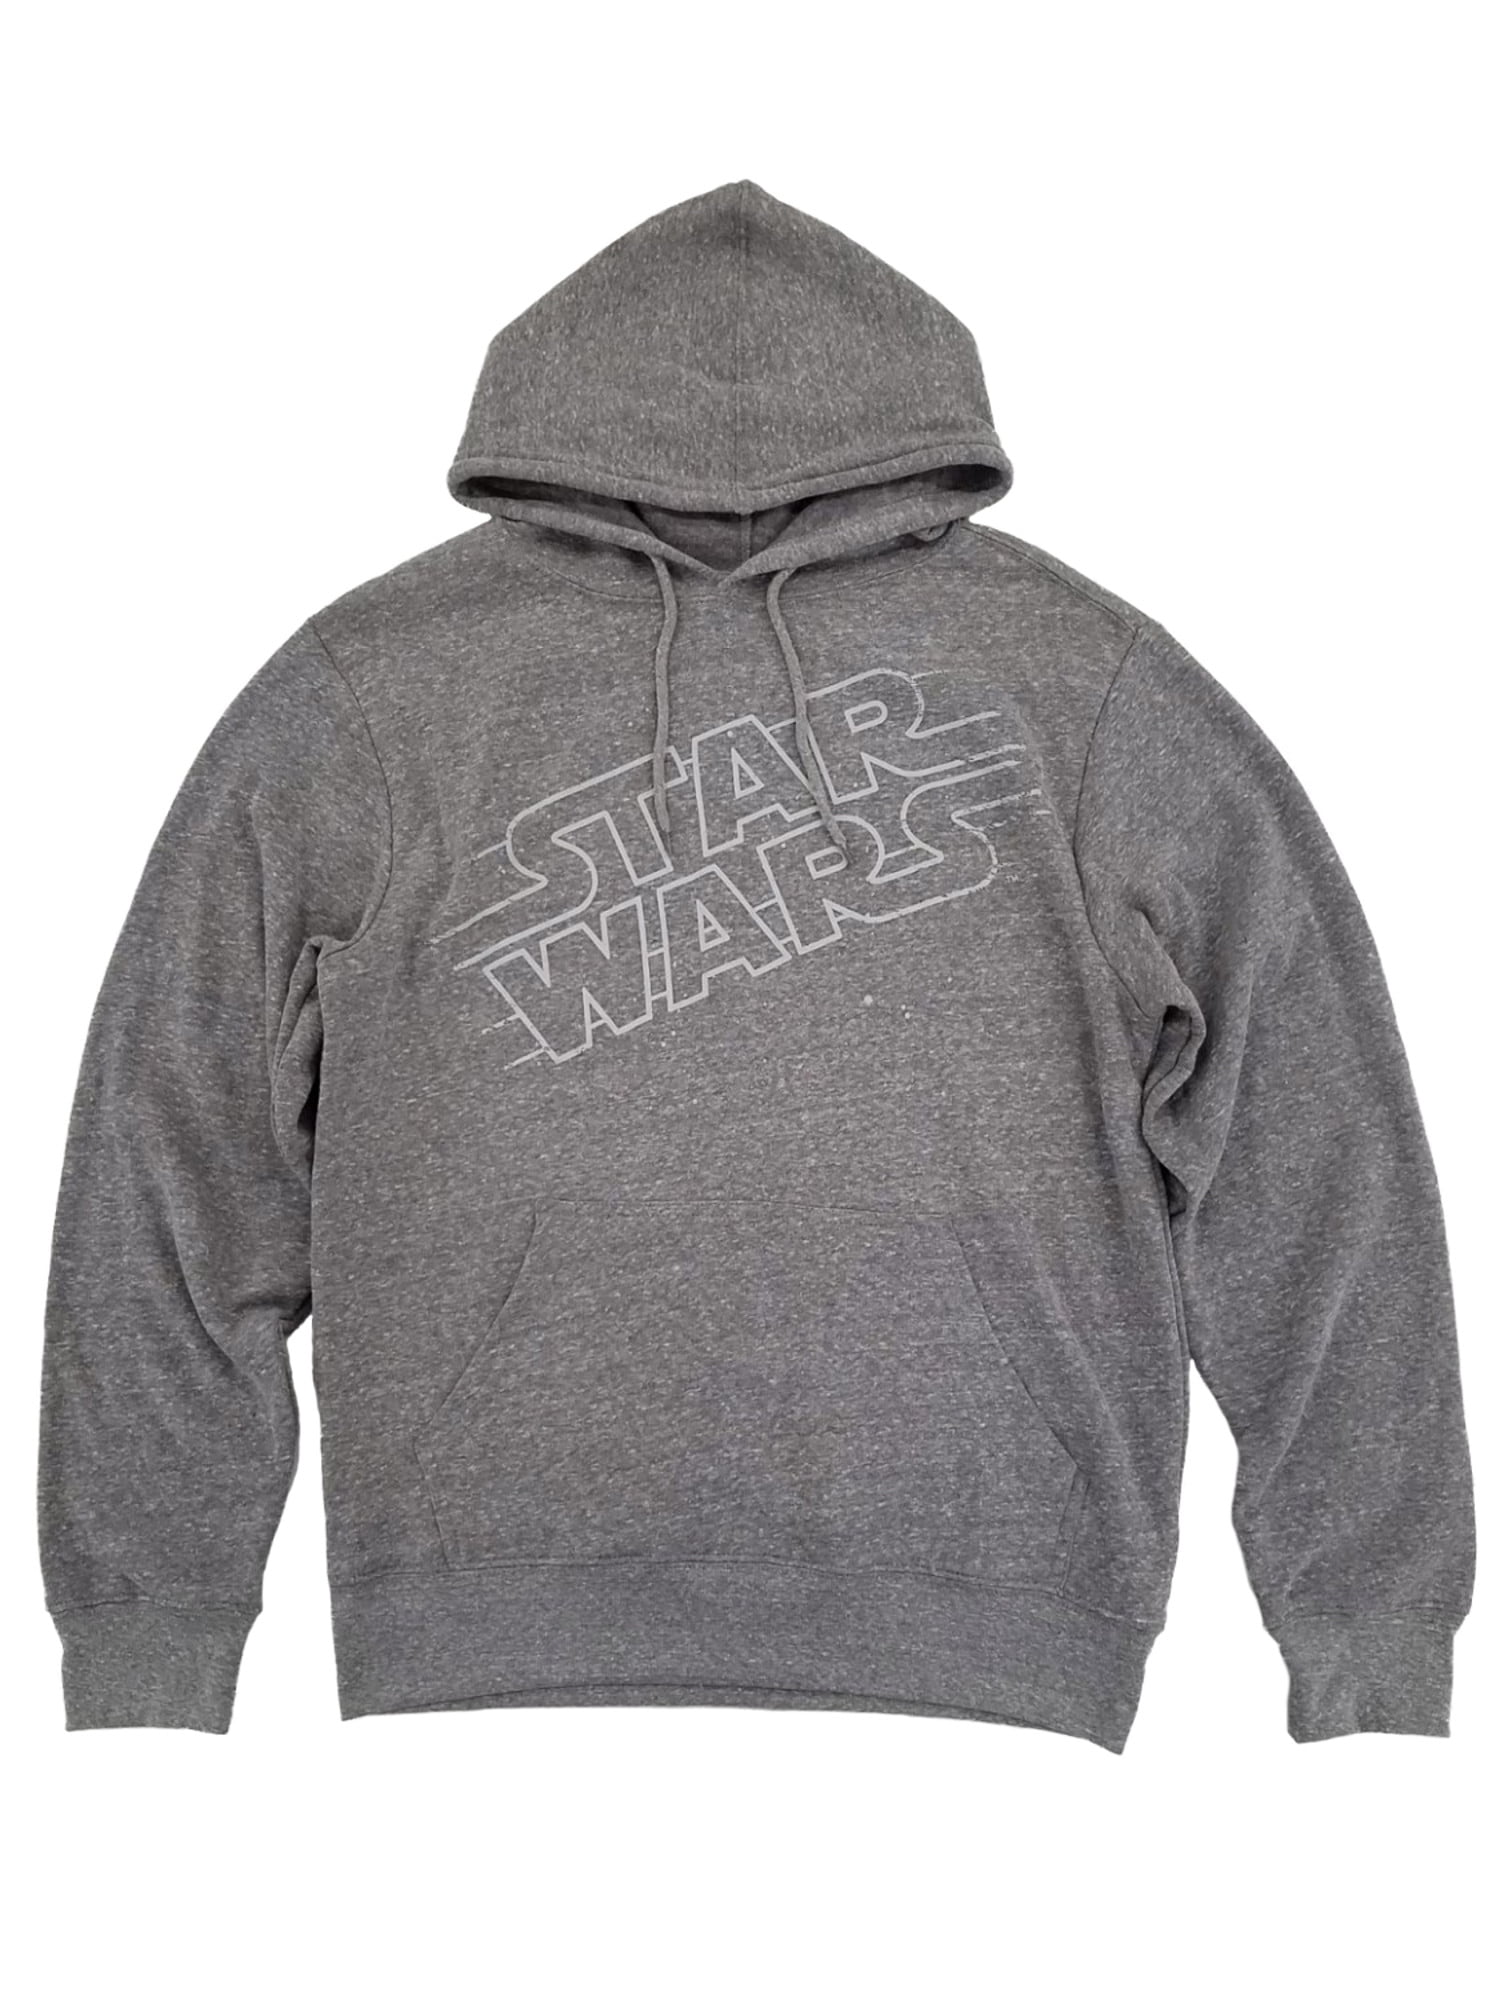 Star Wars Mens Heather Gray Pullover Hoodie Sweatshirt